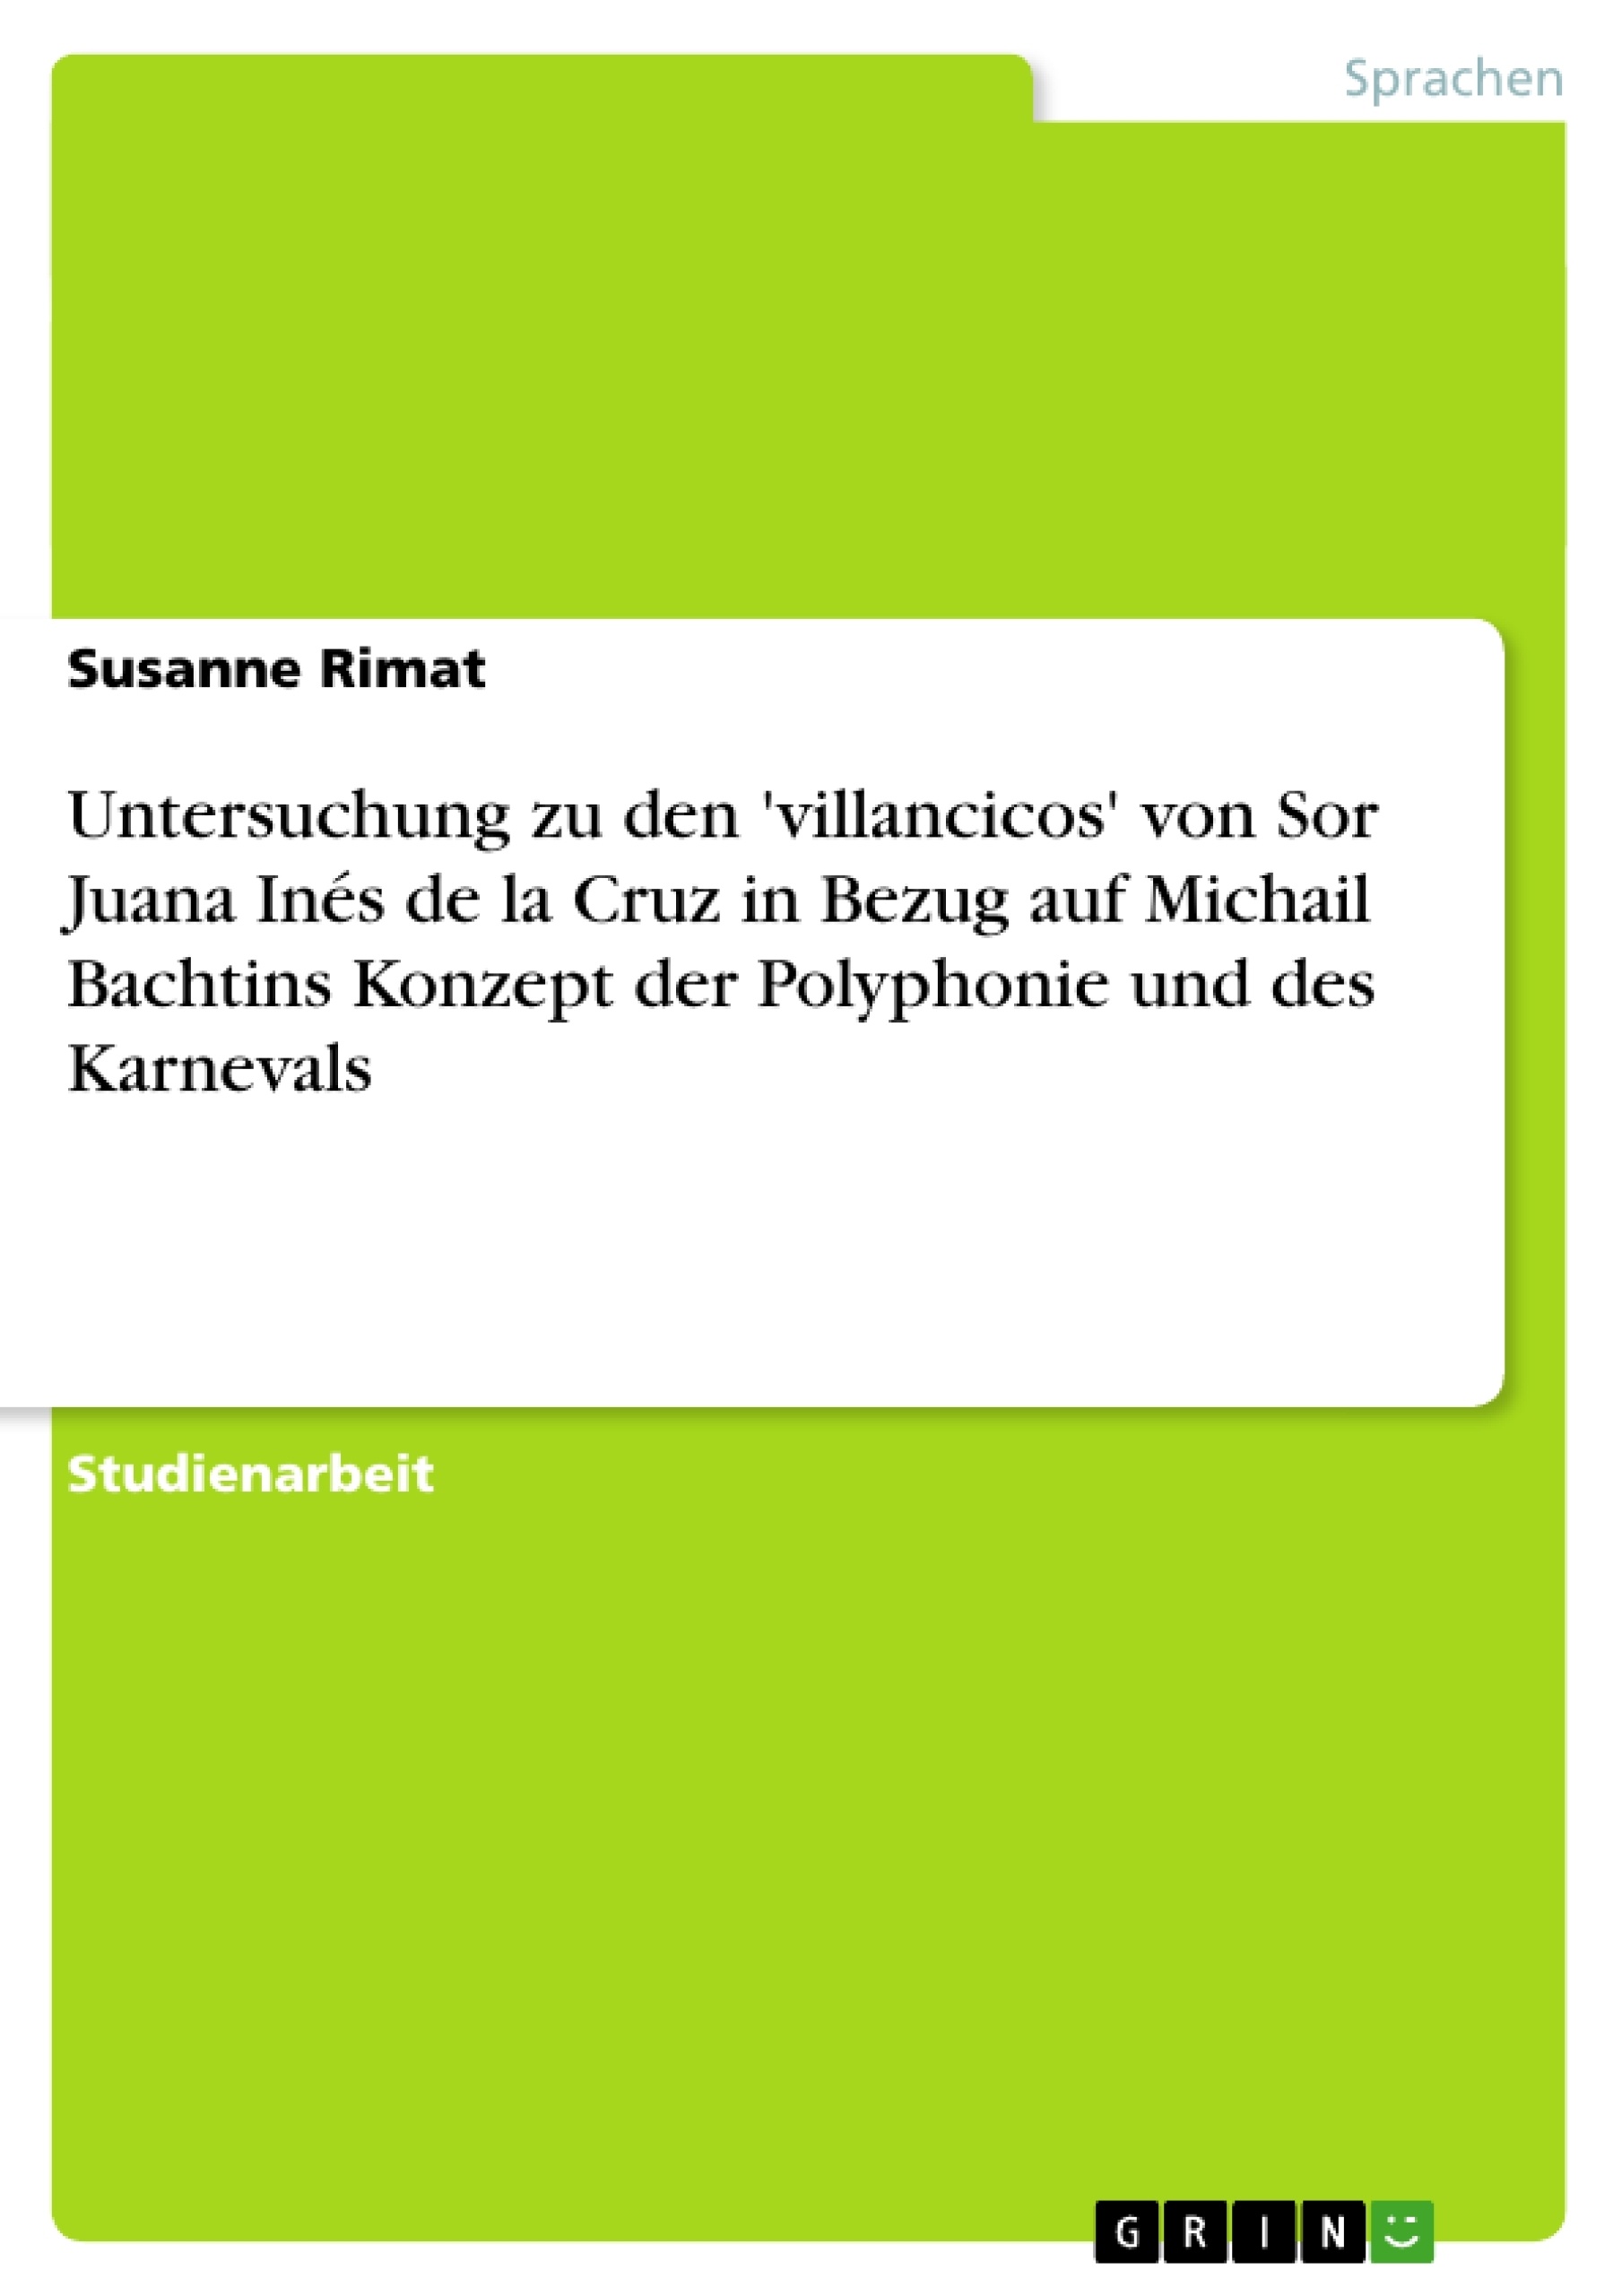 Título: Untersuchung zu den 'villancicos' von Sor Juana Inés de la Cruz in Bezug auf Michail Bachtins Konzept der Polyphonie und des Karnevals